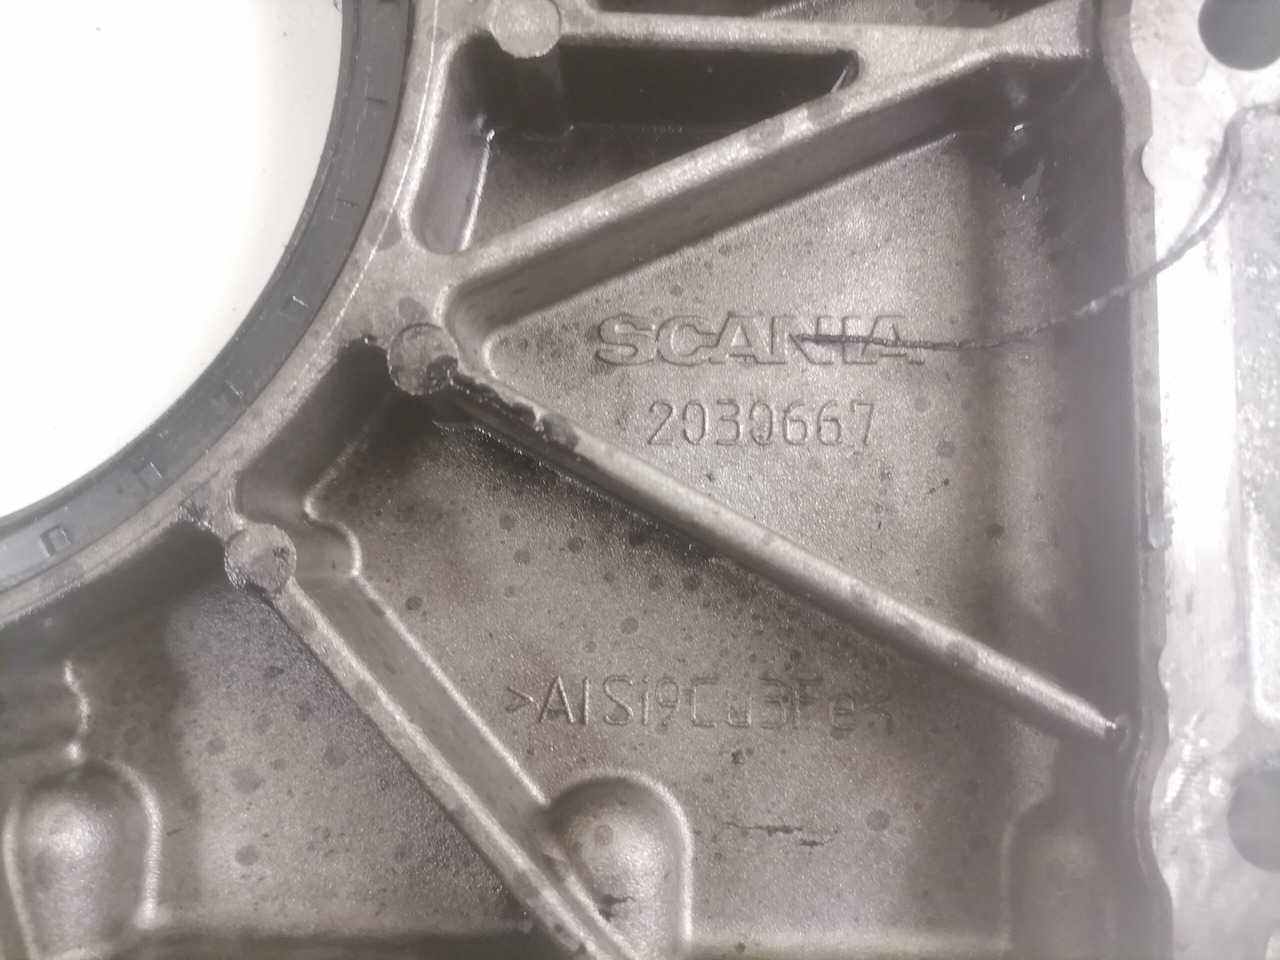 Двигун та запчастини в категорії Вантажівки Scania Engine front cover 2030667: фото 3